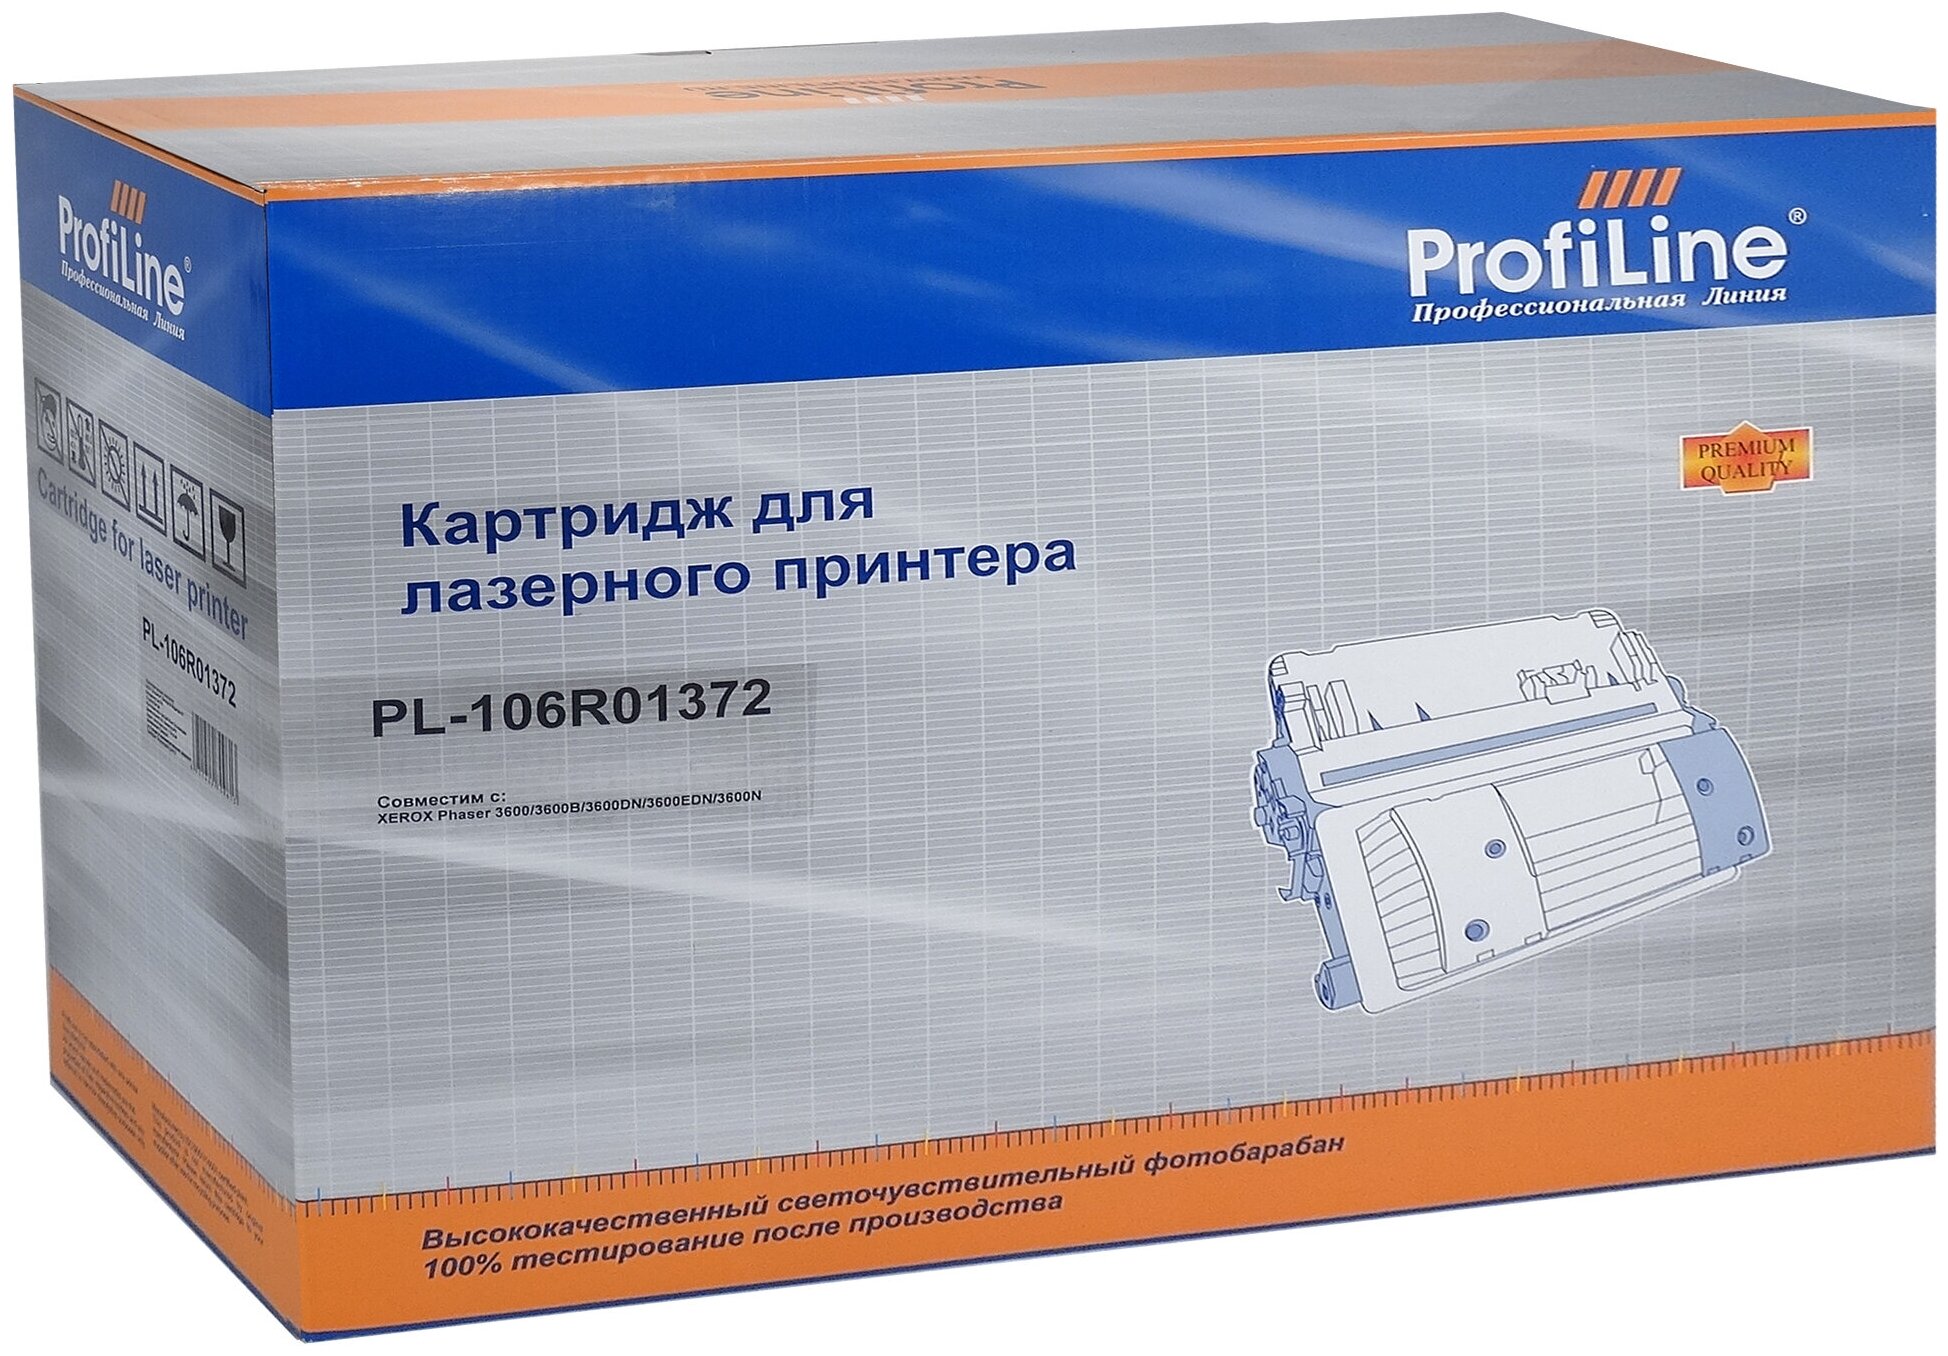 Картридж совместимый PL-106R01372 для принтеров Xerox Phaser 3600/3600B/3600DN/3600N (20000 копий) ProfiLine